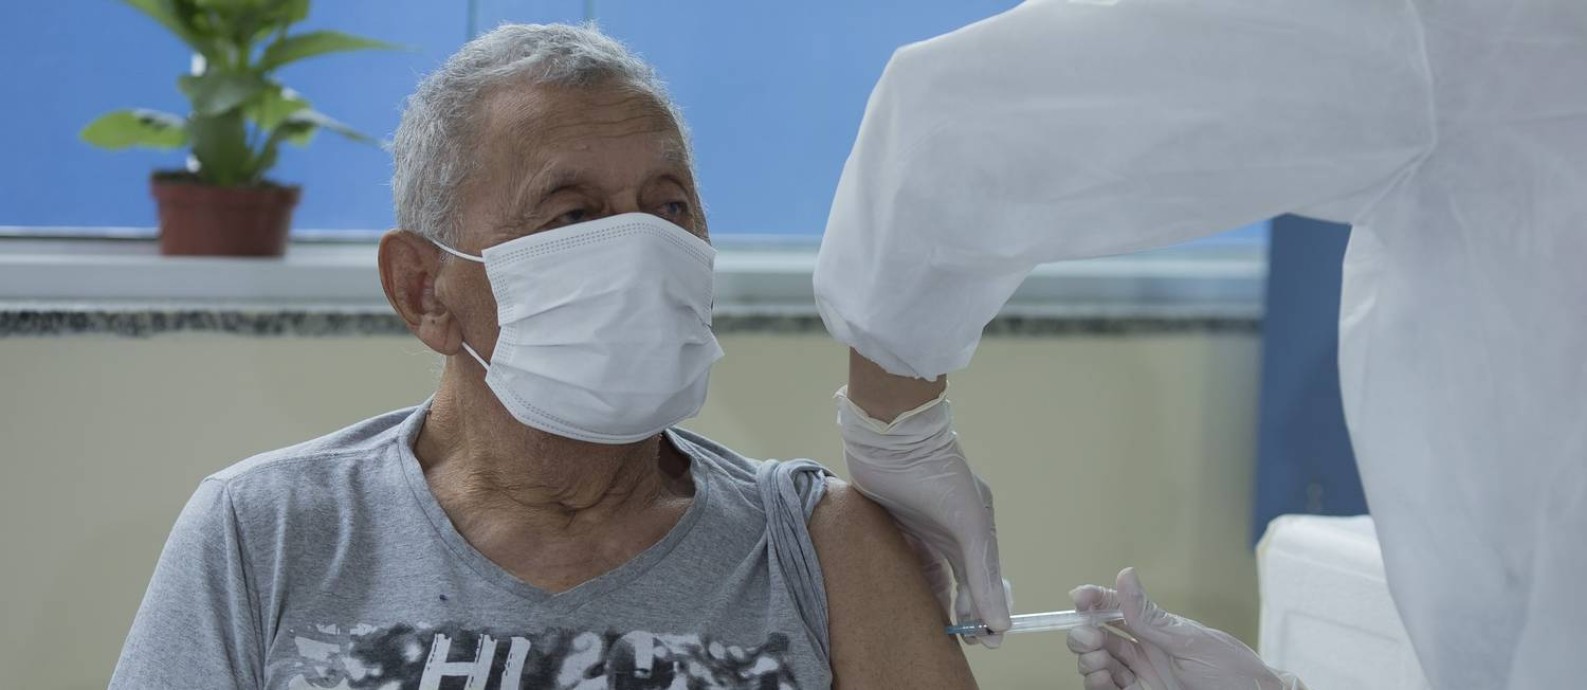 Aplicação de vacina contra a Covid-19 em São Paulo Foto: Edilson Dantas / Agência O Globo